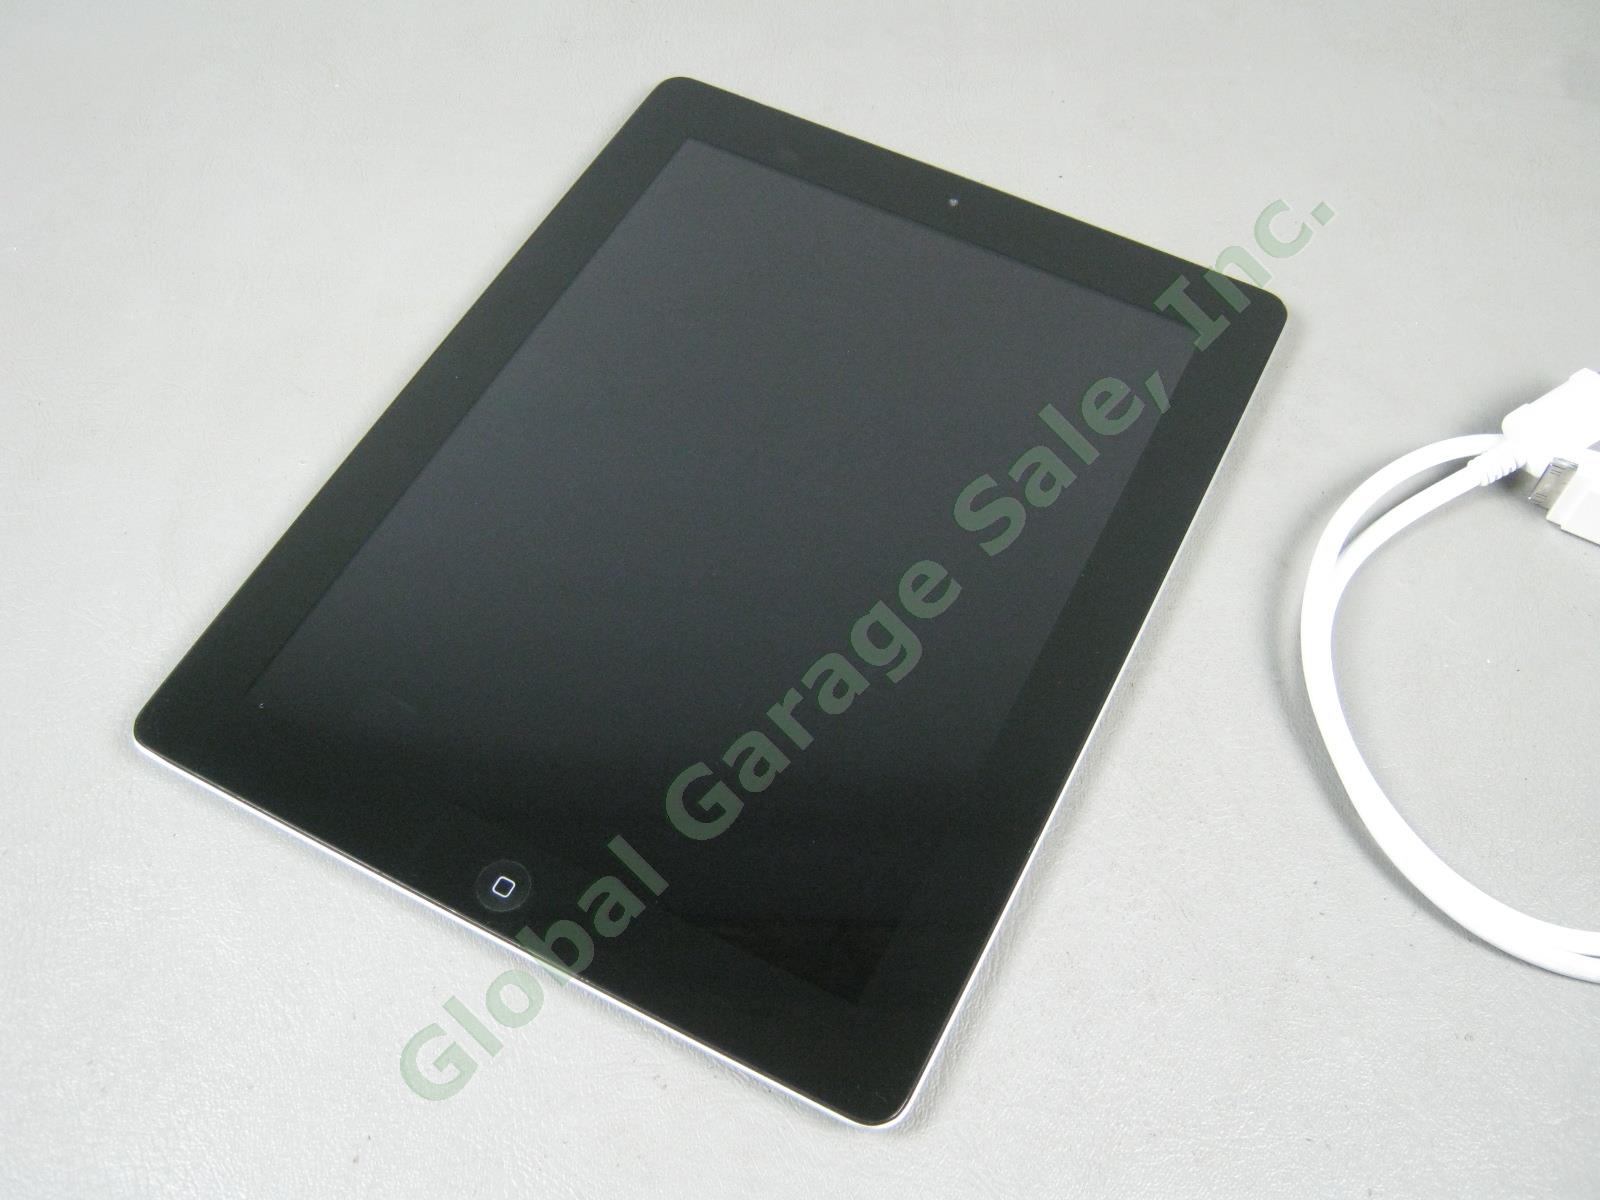 Apple iPad 2 Wifi 32GB Black Tablet Factory Reset MC770LL/A A1395 NO RESERVE! 3